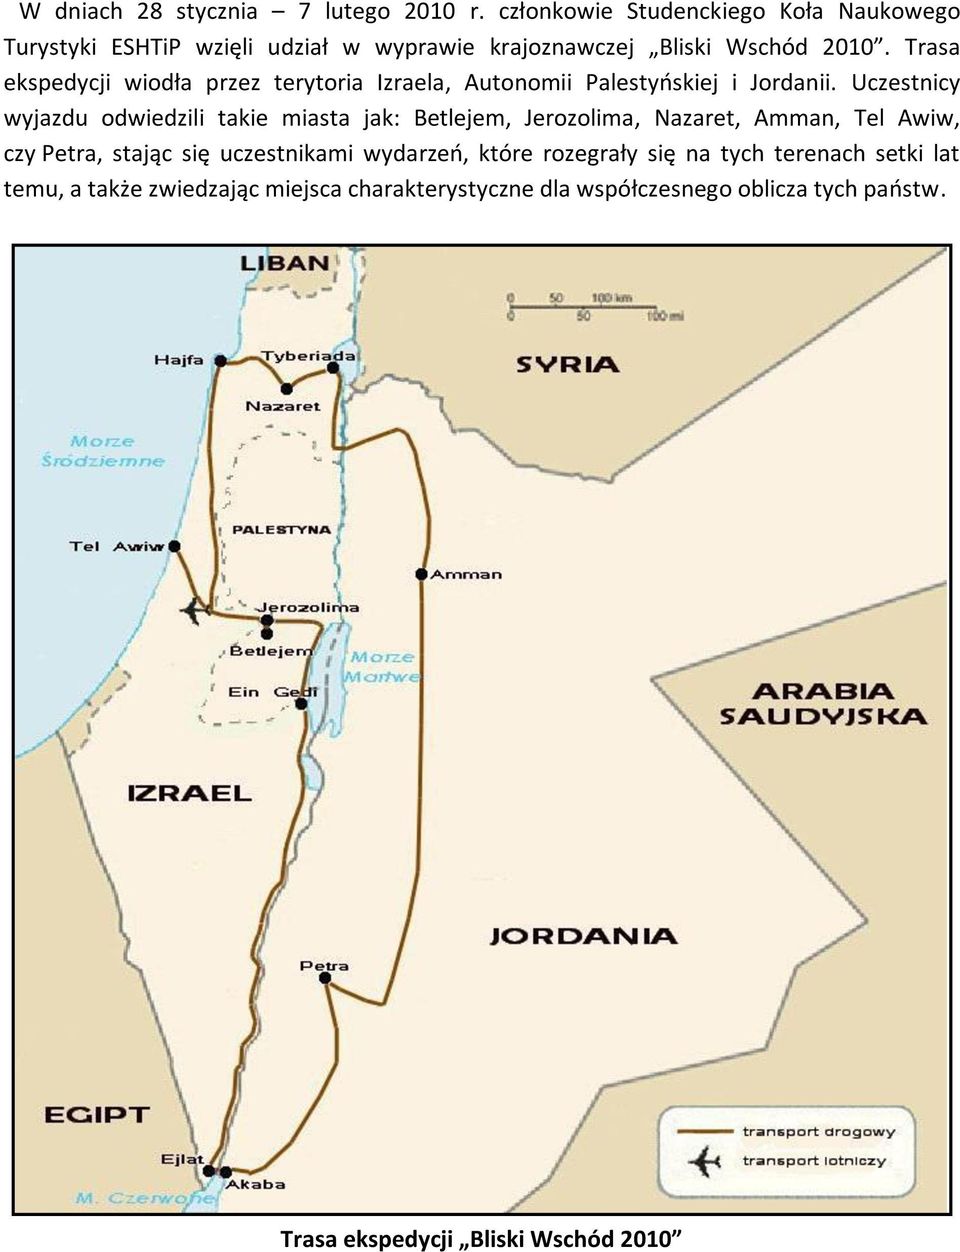 Trasa ekspedycji wiodła przez terytoria Izraela, Autonomii Palestyoskiej i Jordanii.